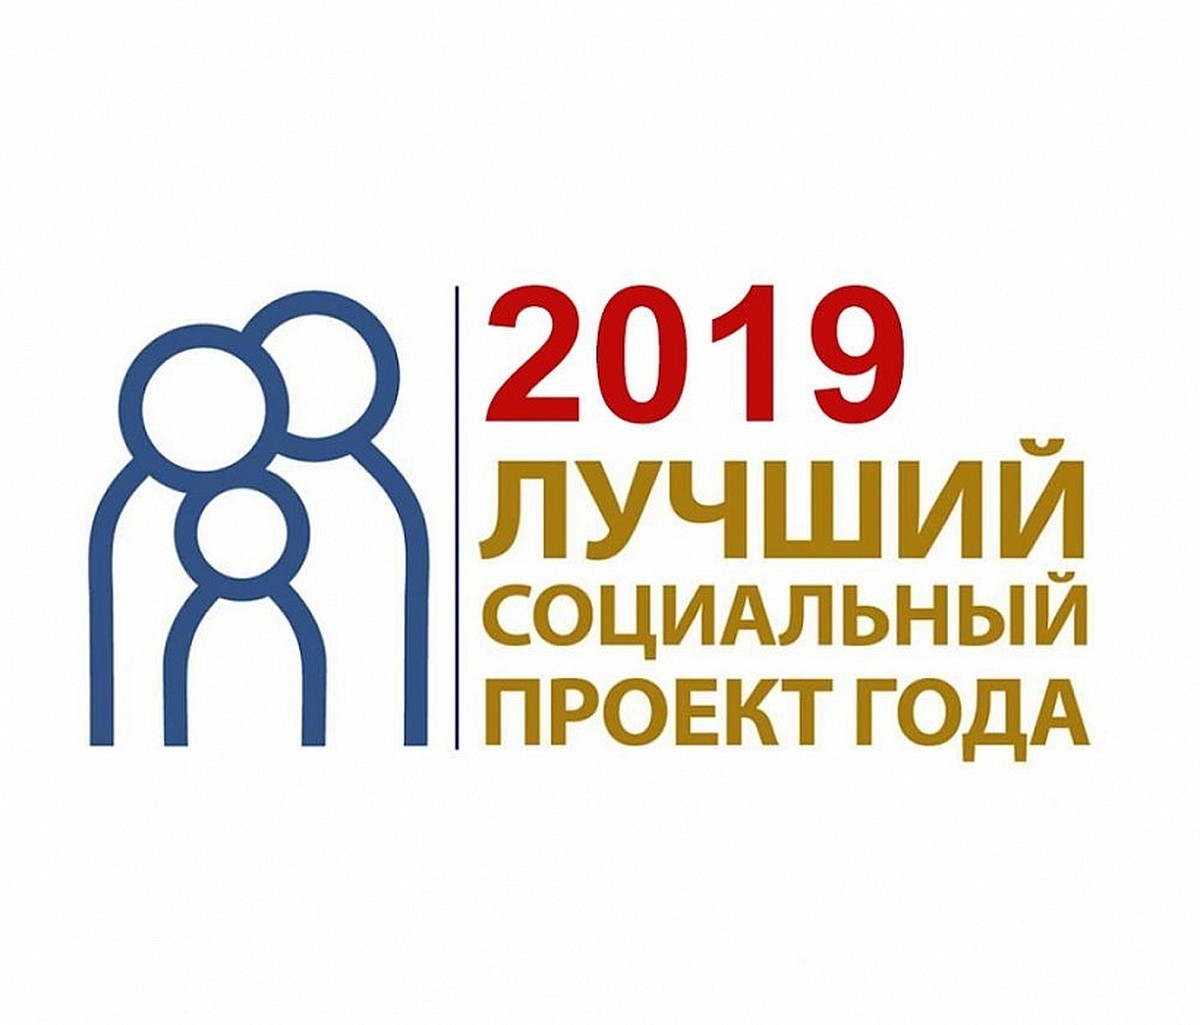 Продолжается  прием заявок на  конкурс  «Лучший социальный проект года» в Архангельской области